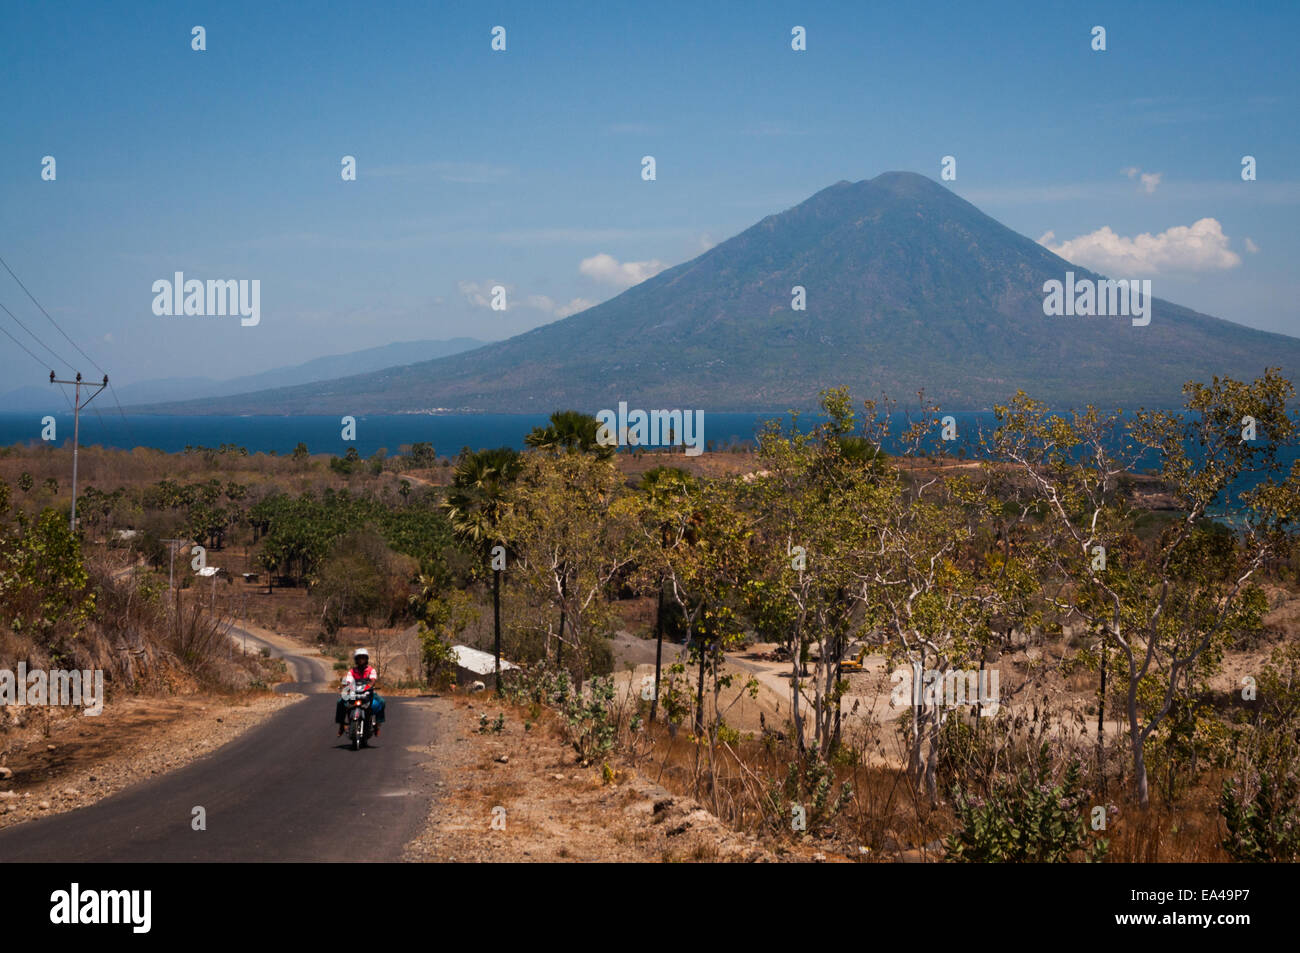 Ile (Monte) Boleng nell'isola di Adonara e Boleng Strait sono visti da una strada vicino alla collina di Waijarang nell'isola di Lembata, Nusa Tenggara orientale, Indonesia. Foto Stock